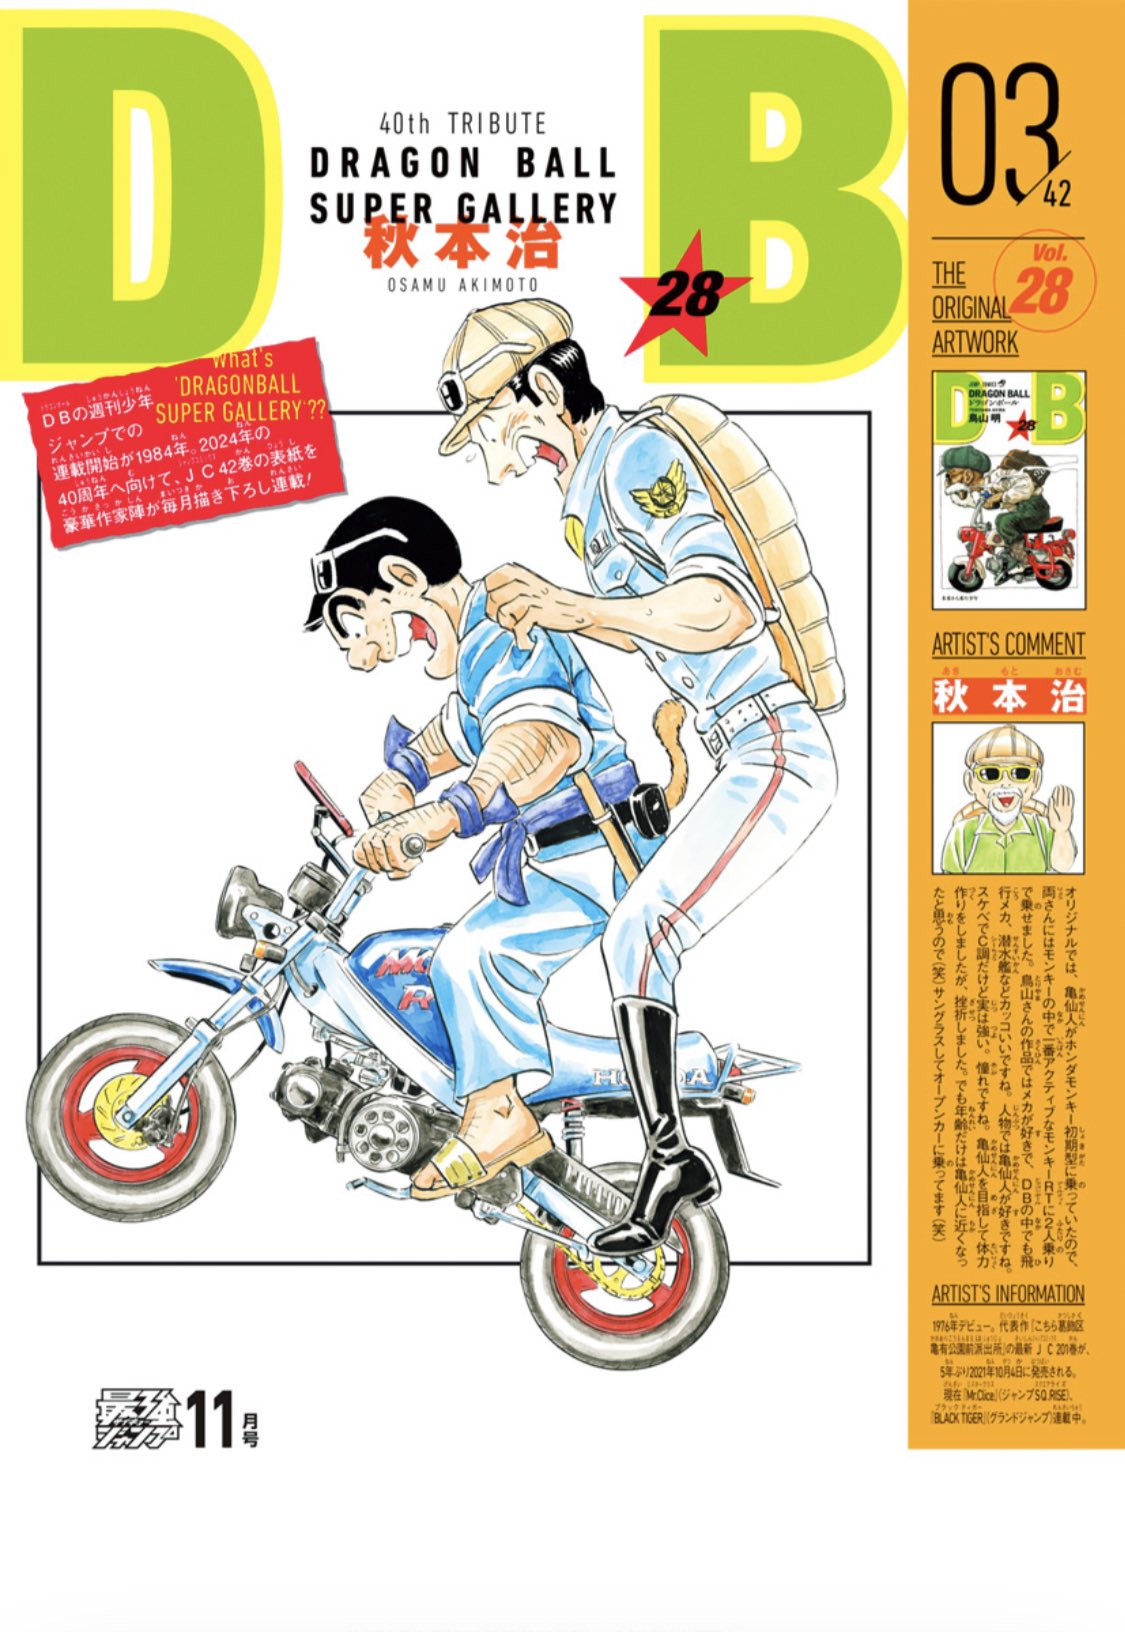 Criador de KochiKame reimaginou uma das capas do mangá de Dragon Ball